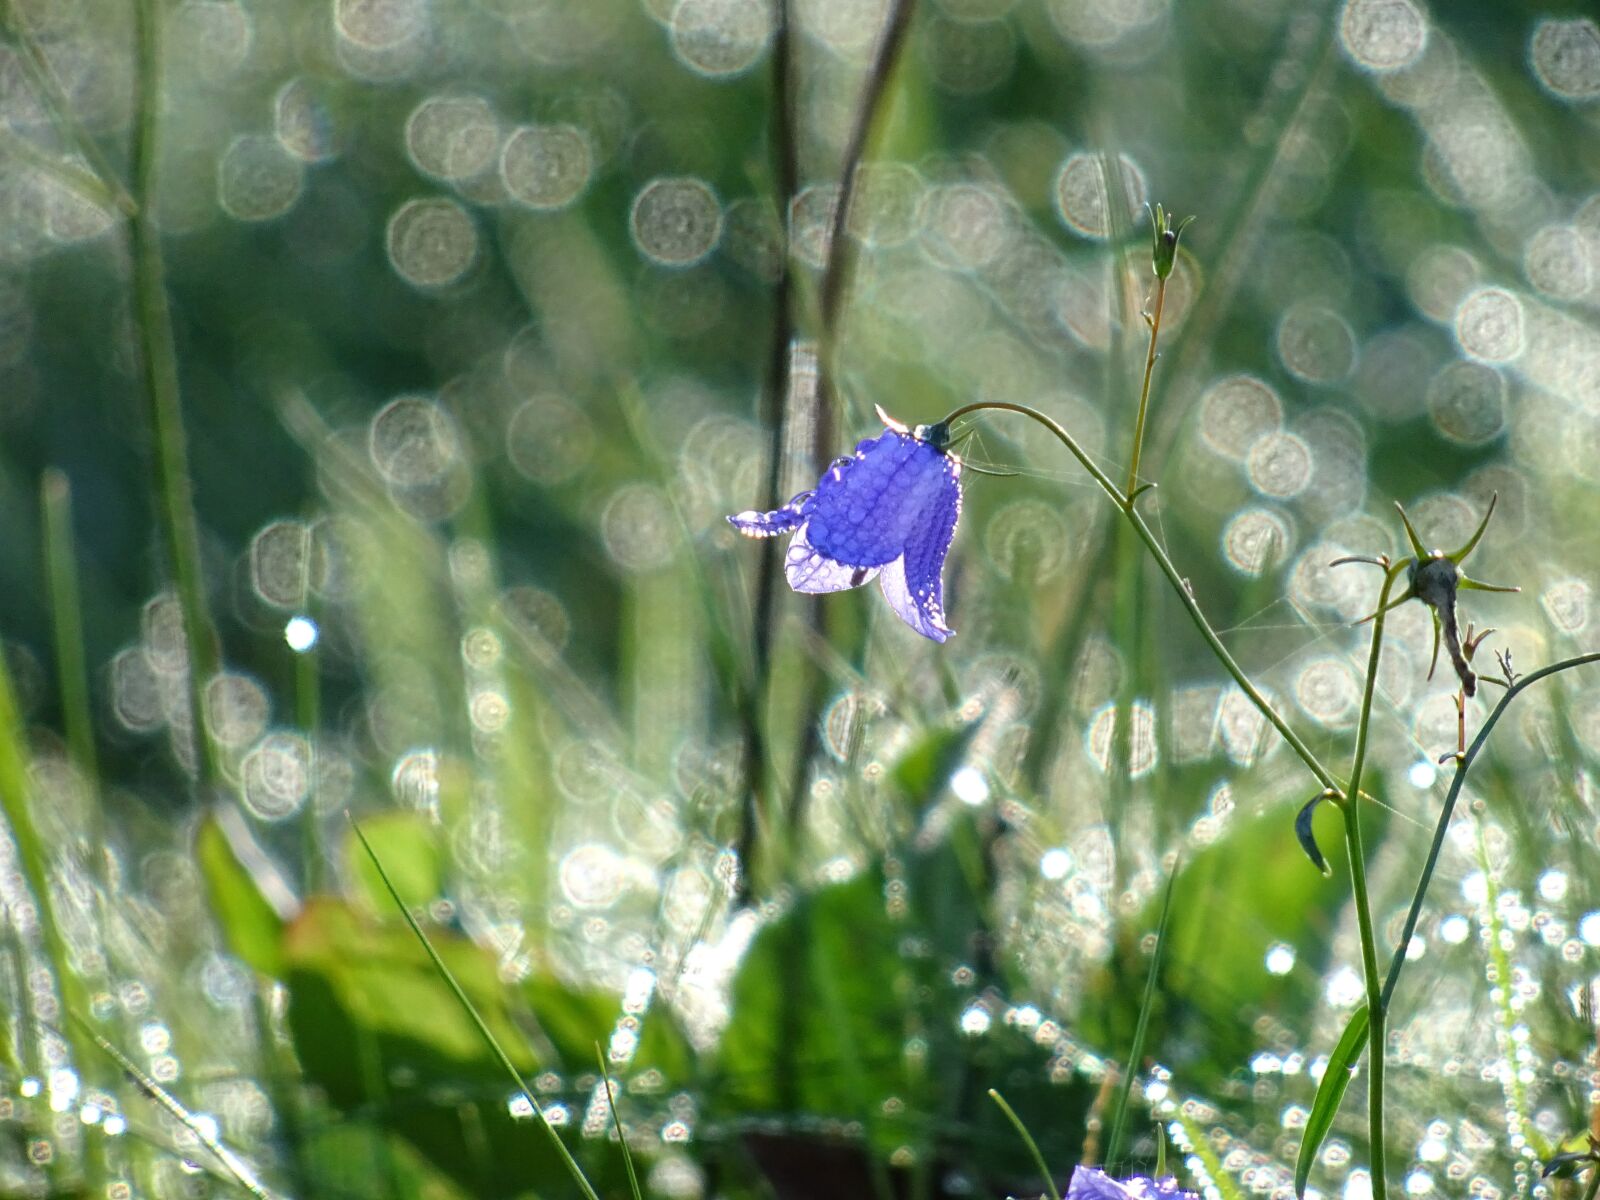 Sony DSC-HX60V sample photo. Flower, floral, violet photography